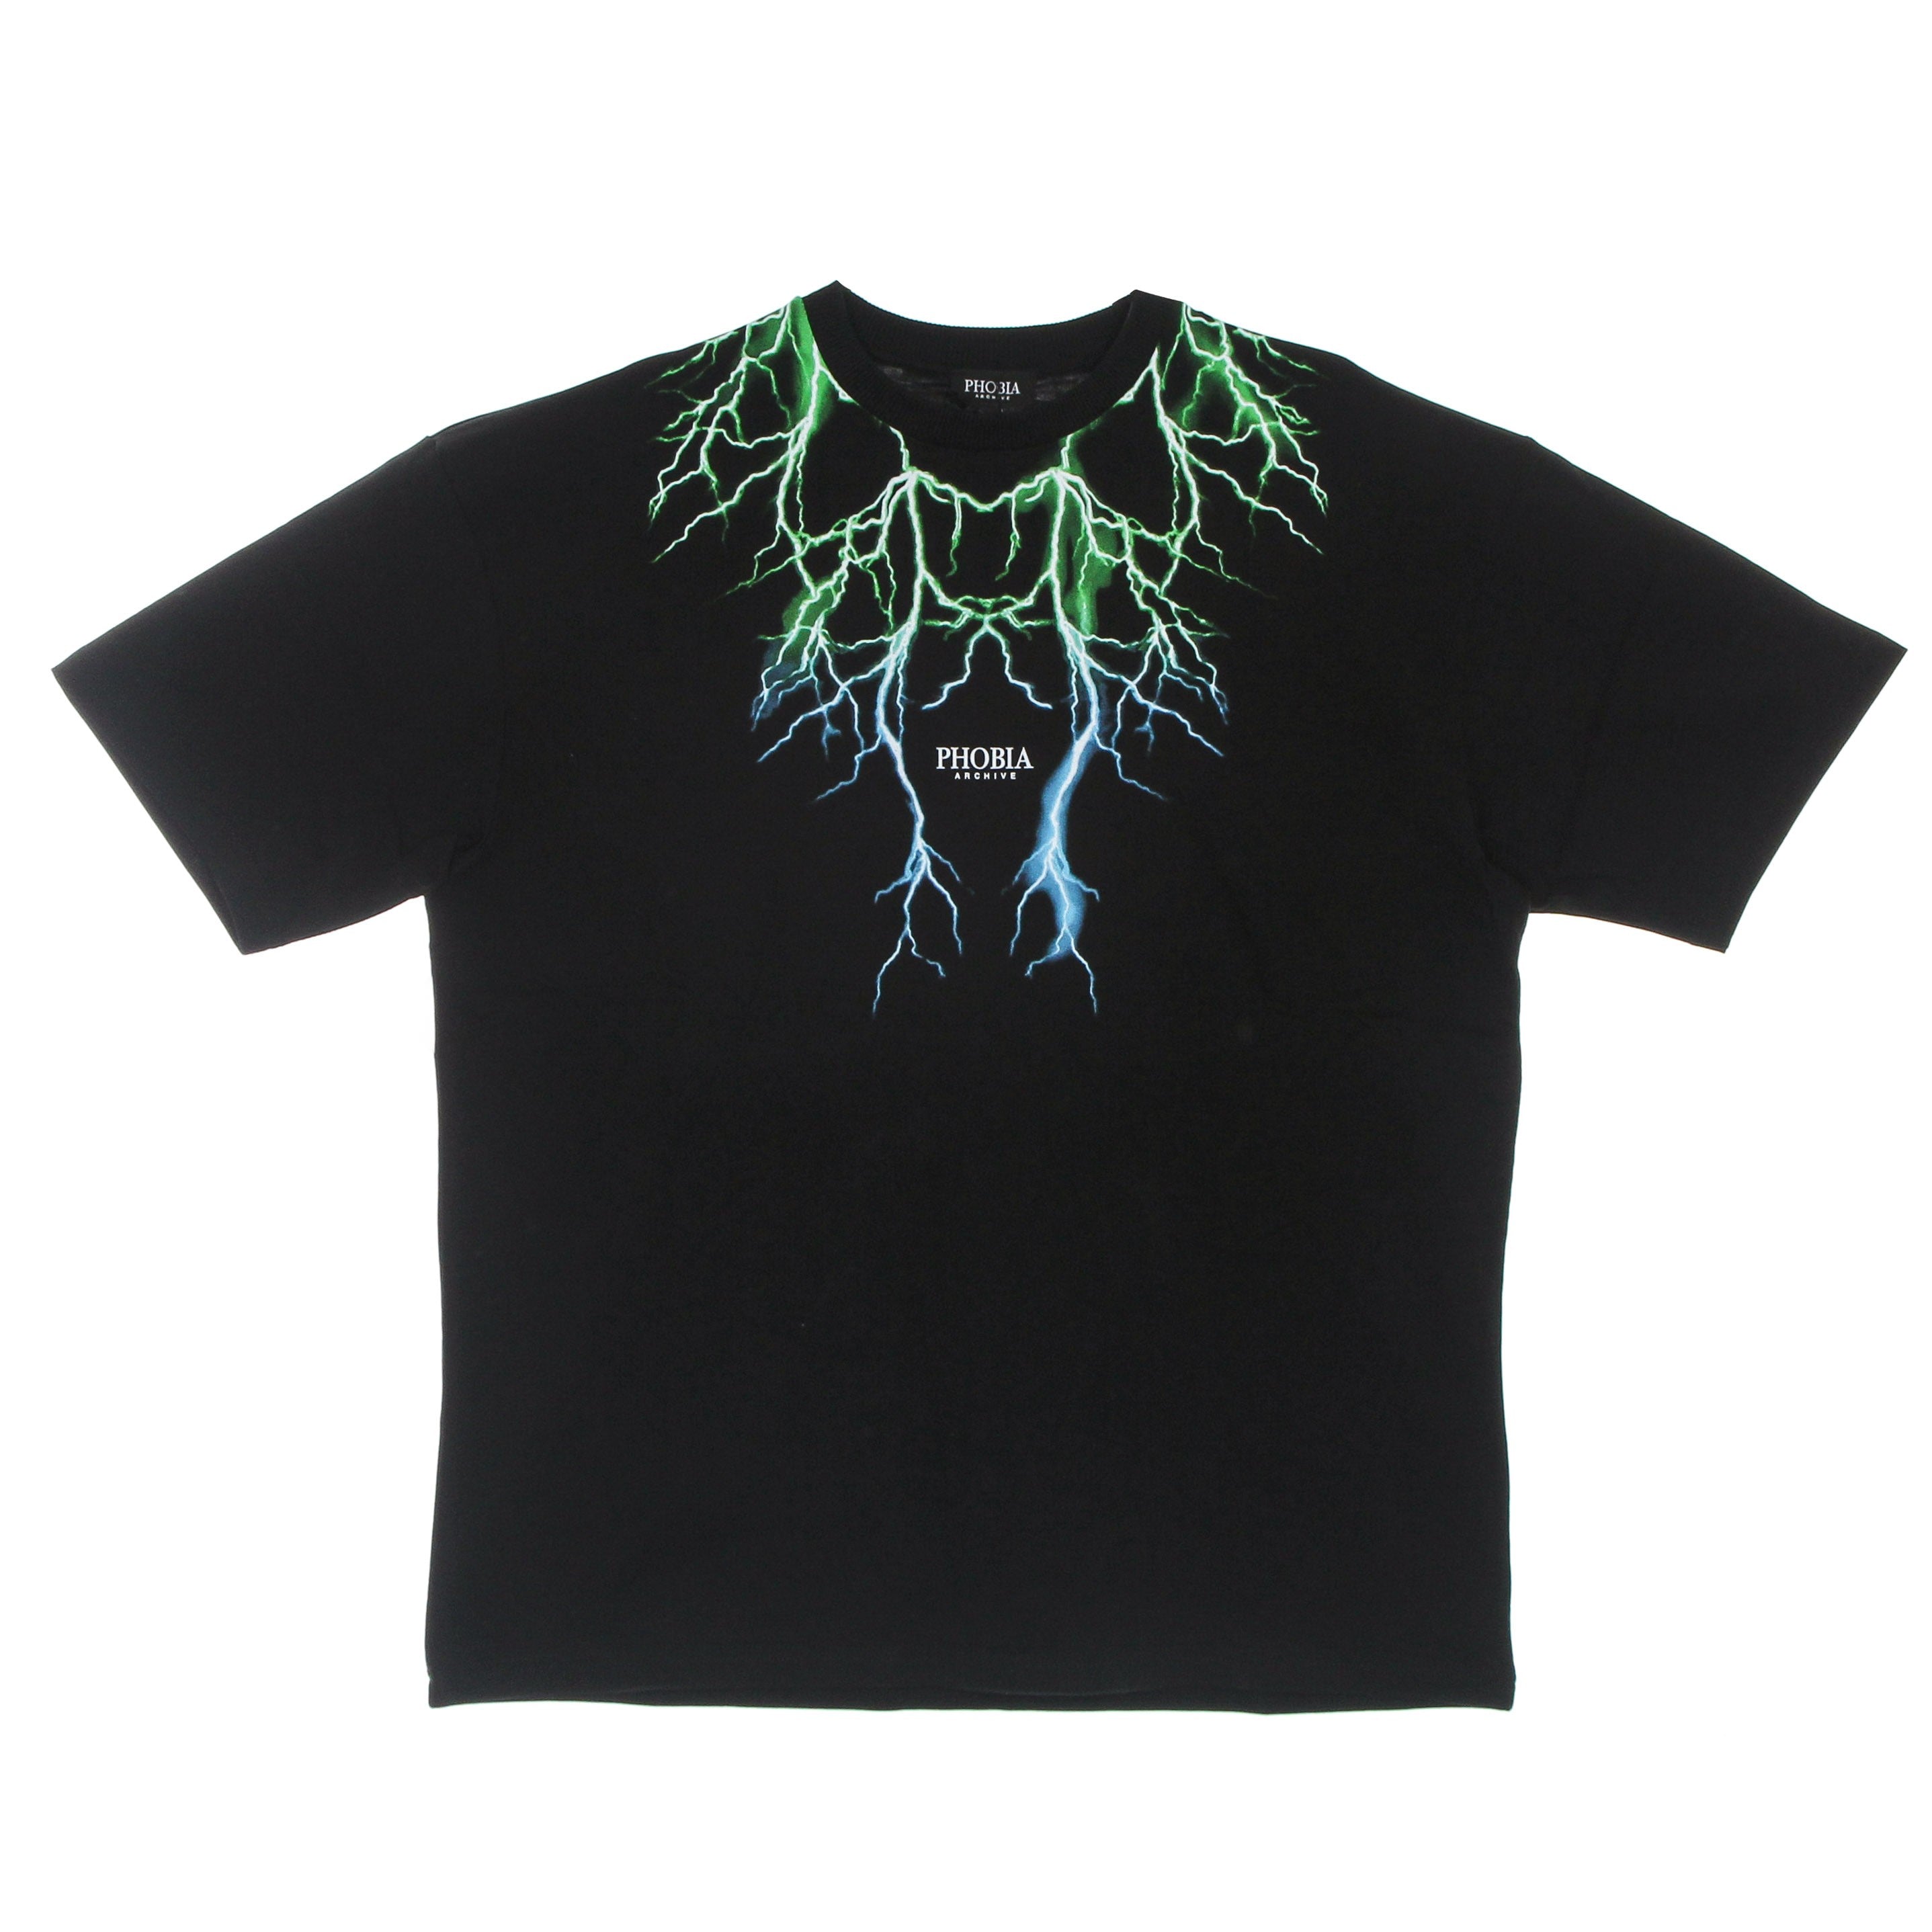 Men's Lightning Tee Black/green/lightblue T-shirt